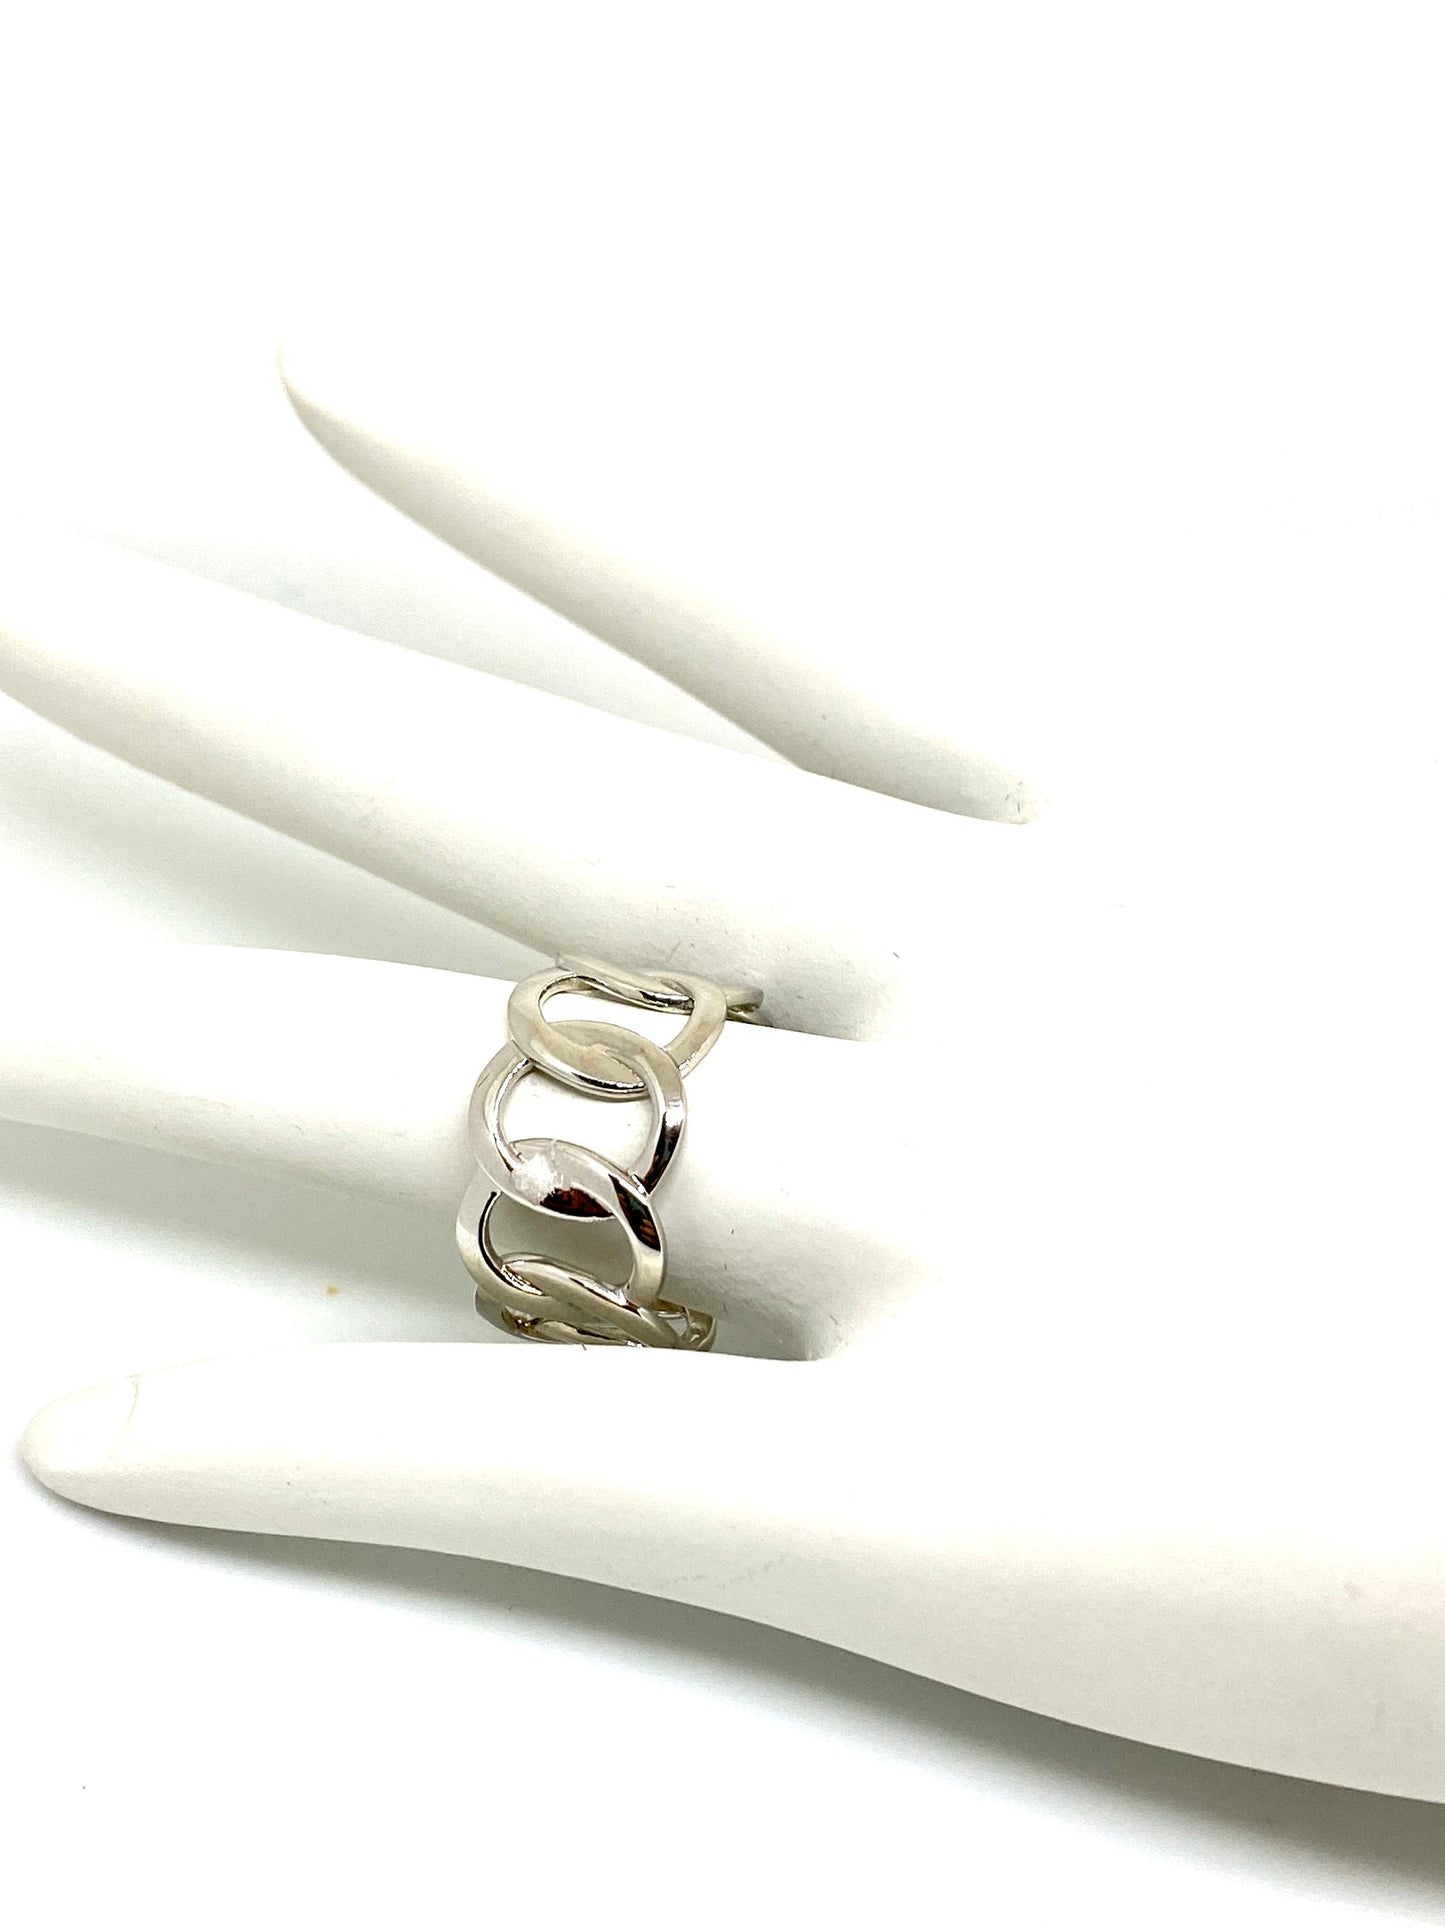 Wide Interlocking Rings Band Ring